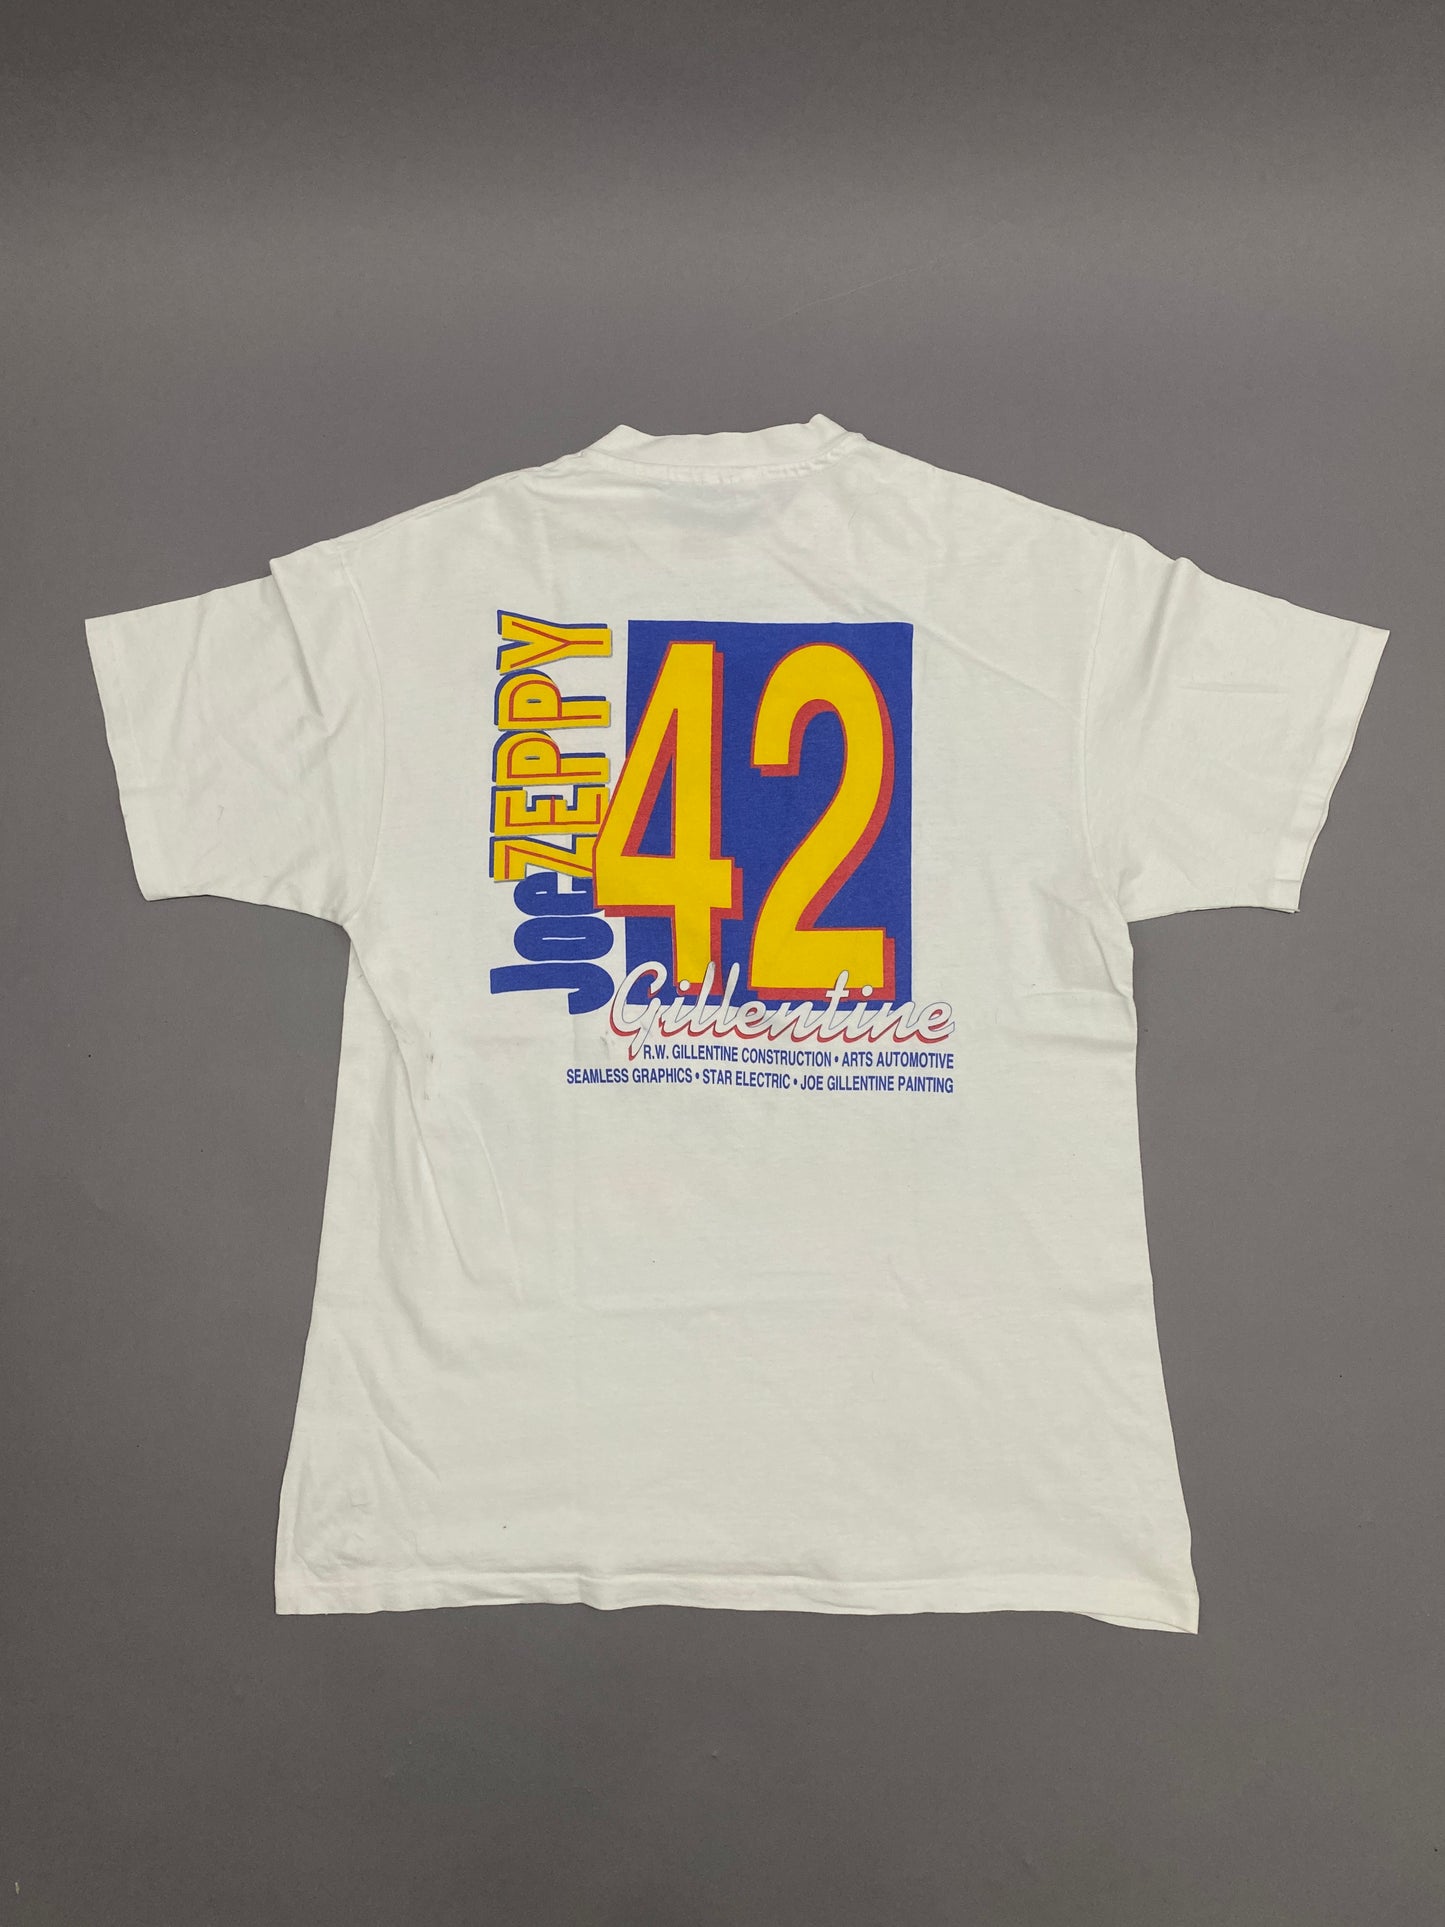 Joe Zeppy Vintage T-shirt